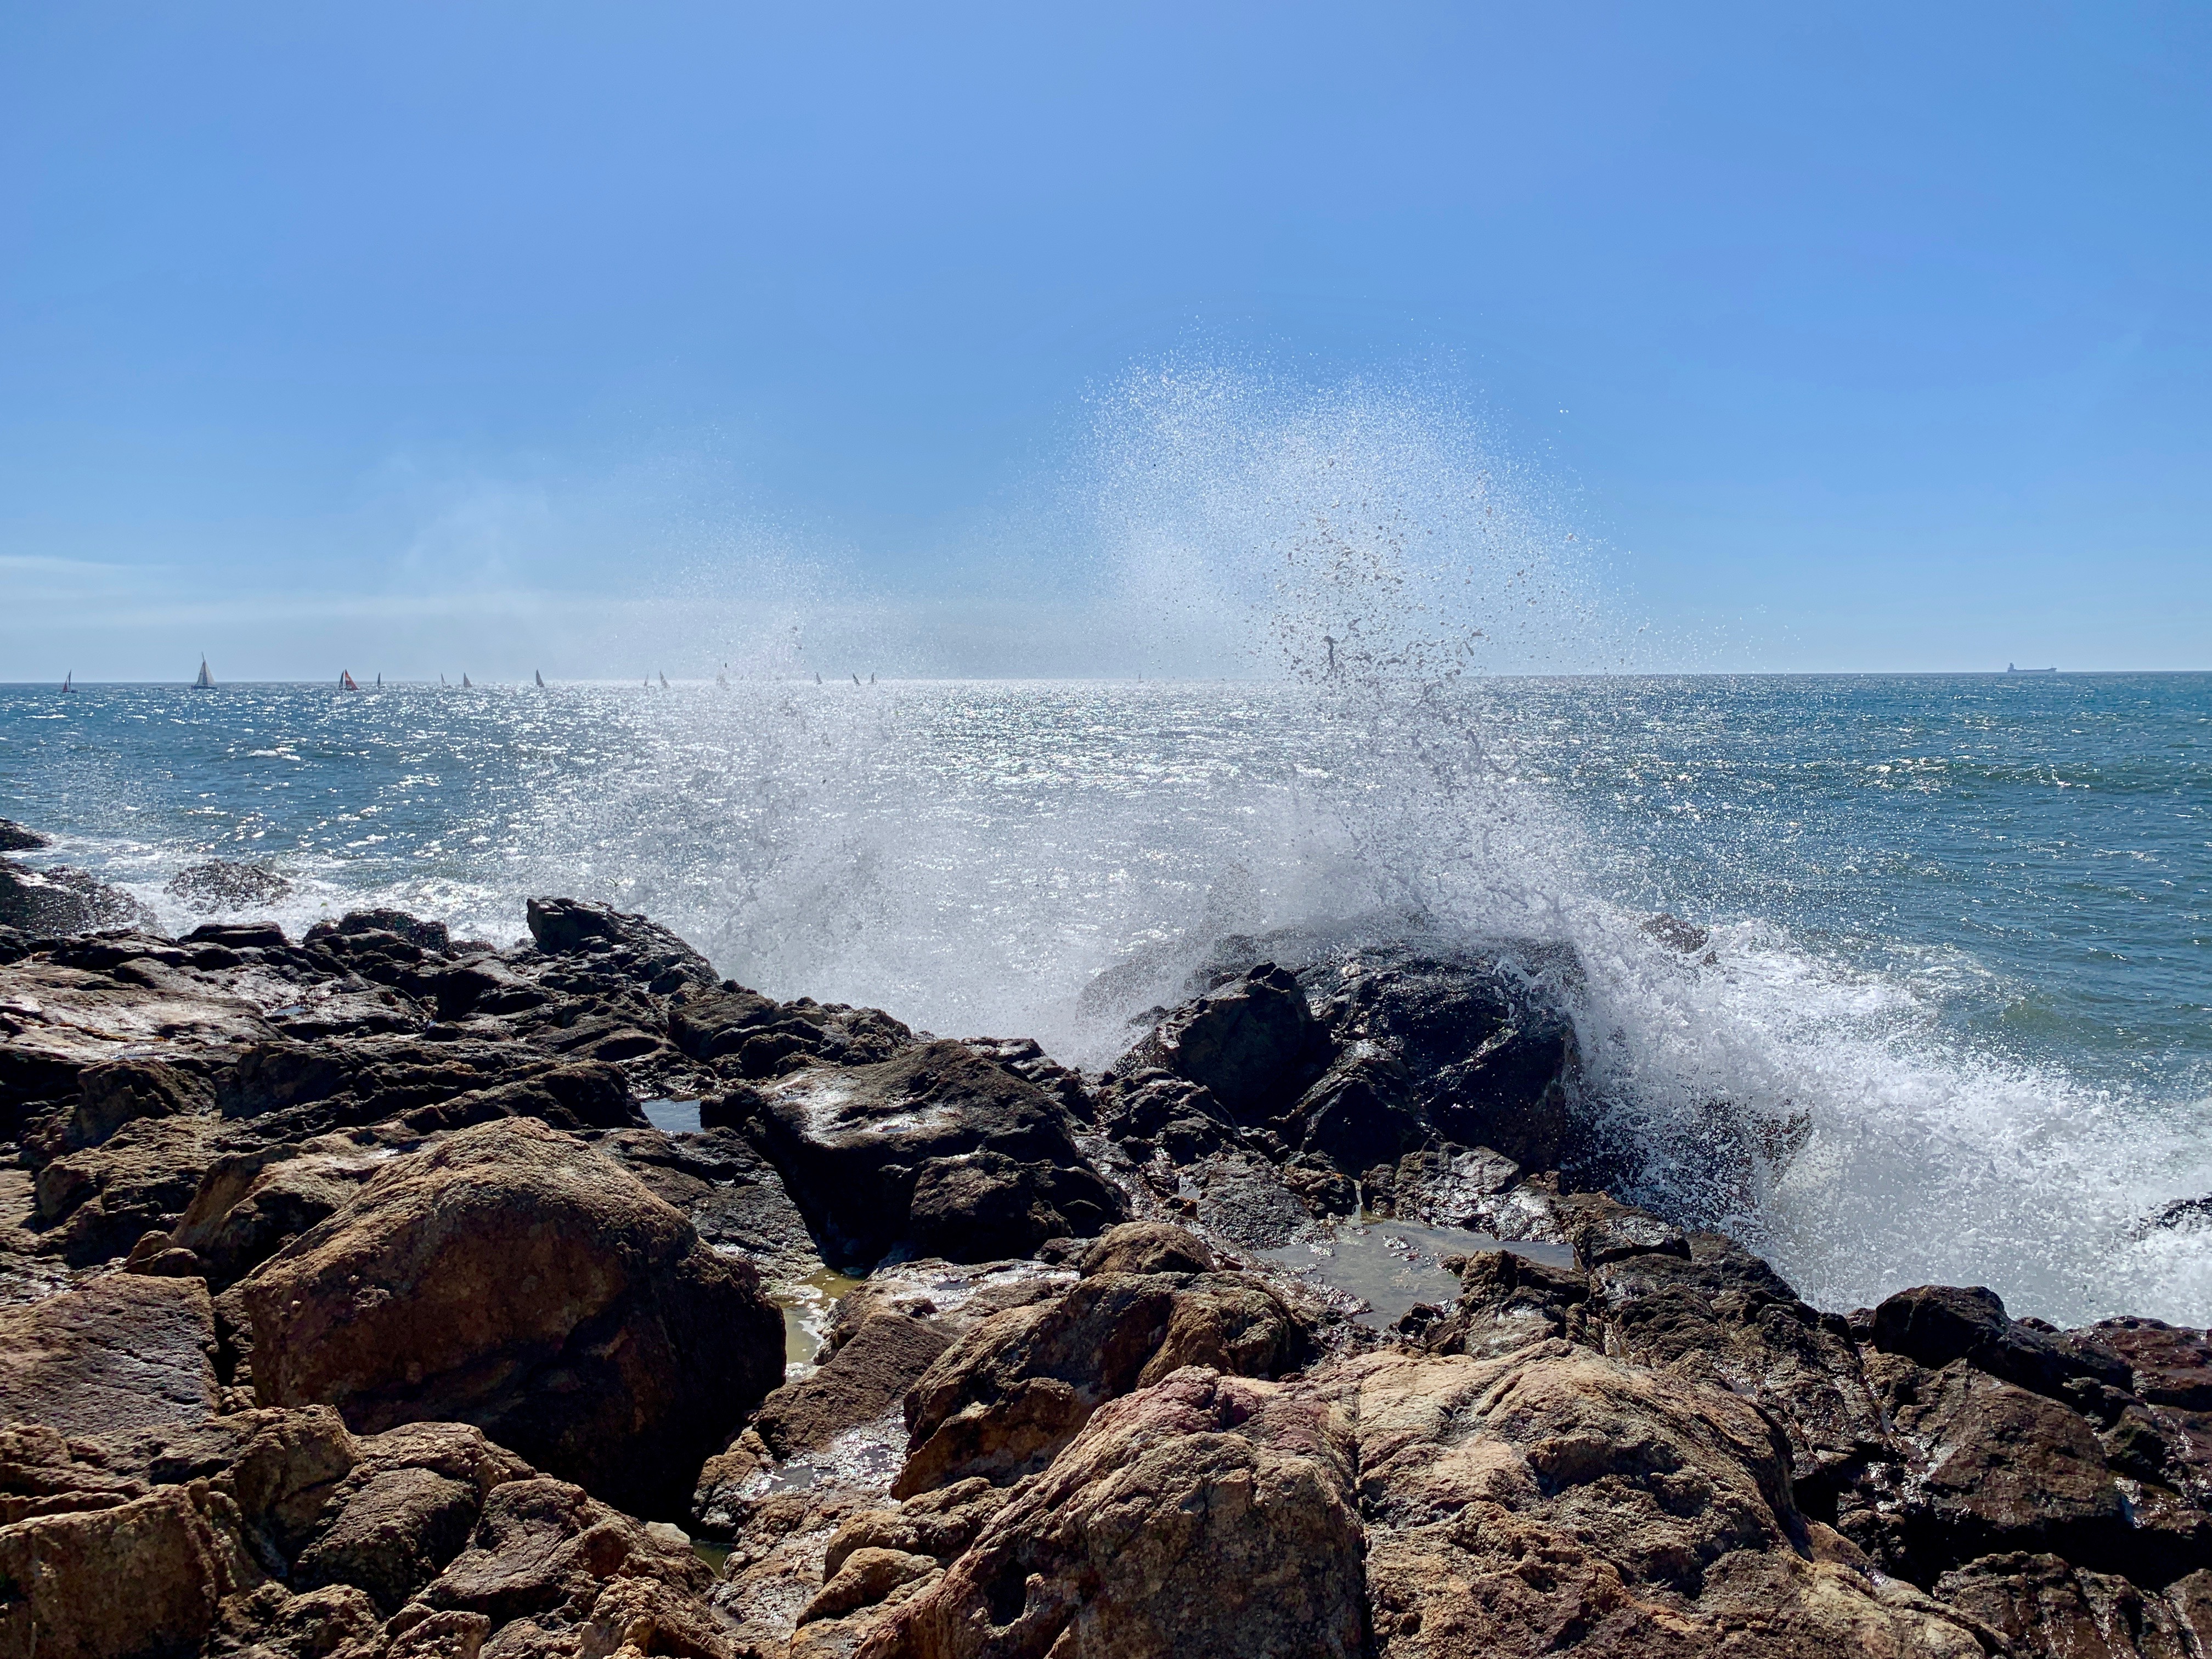 Water crashing on rocks at Praia Ingleses